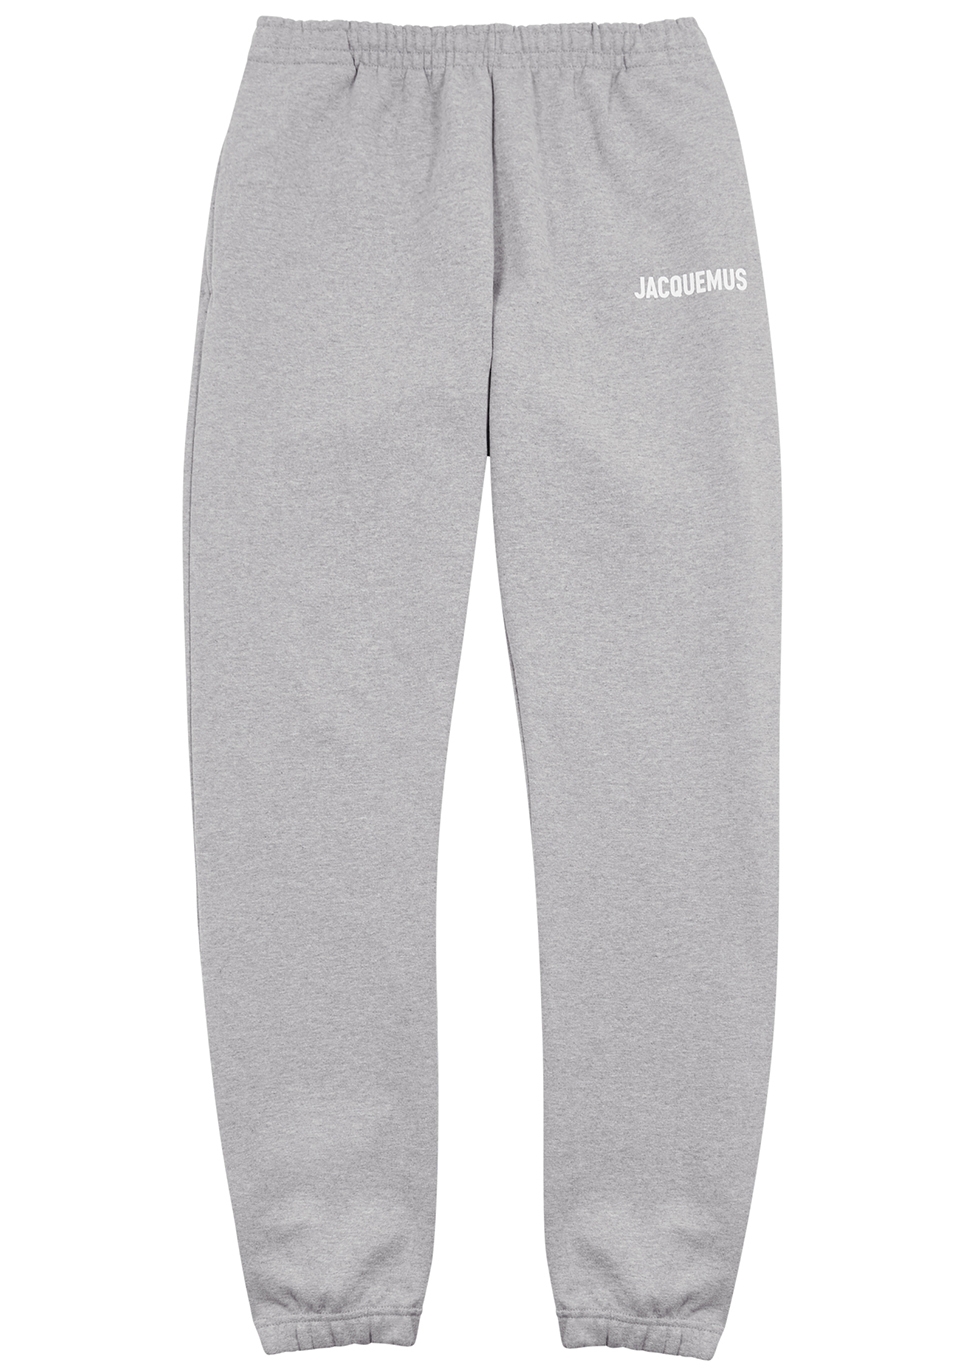 Le Jogging grey cotton sweatpants